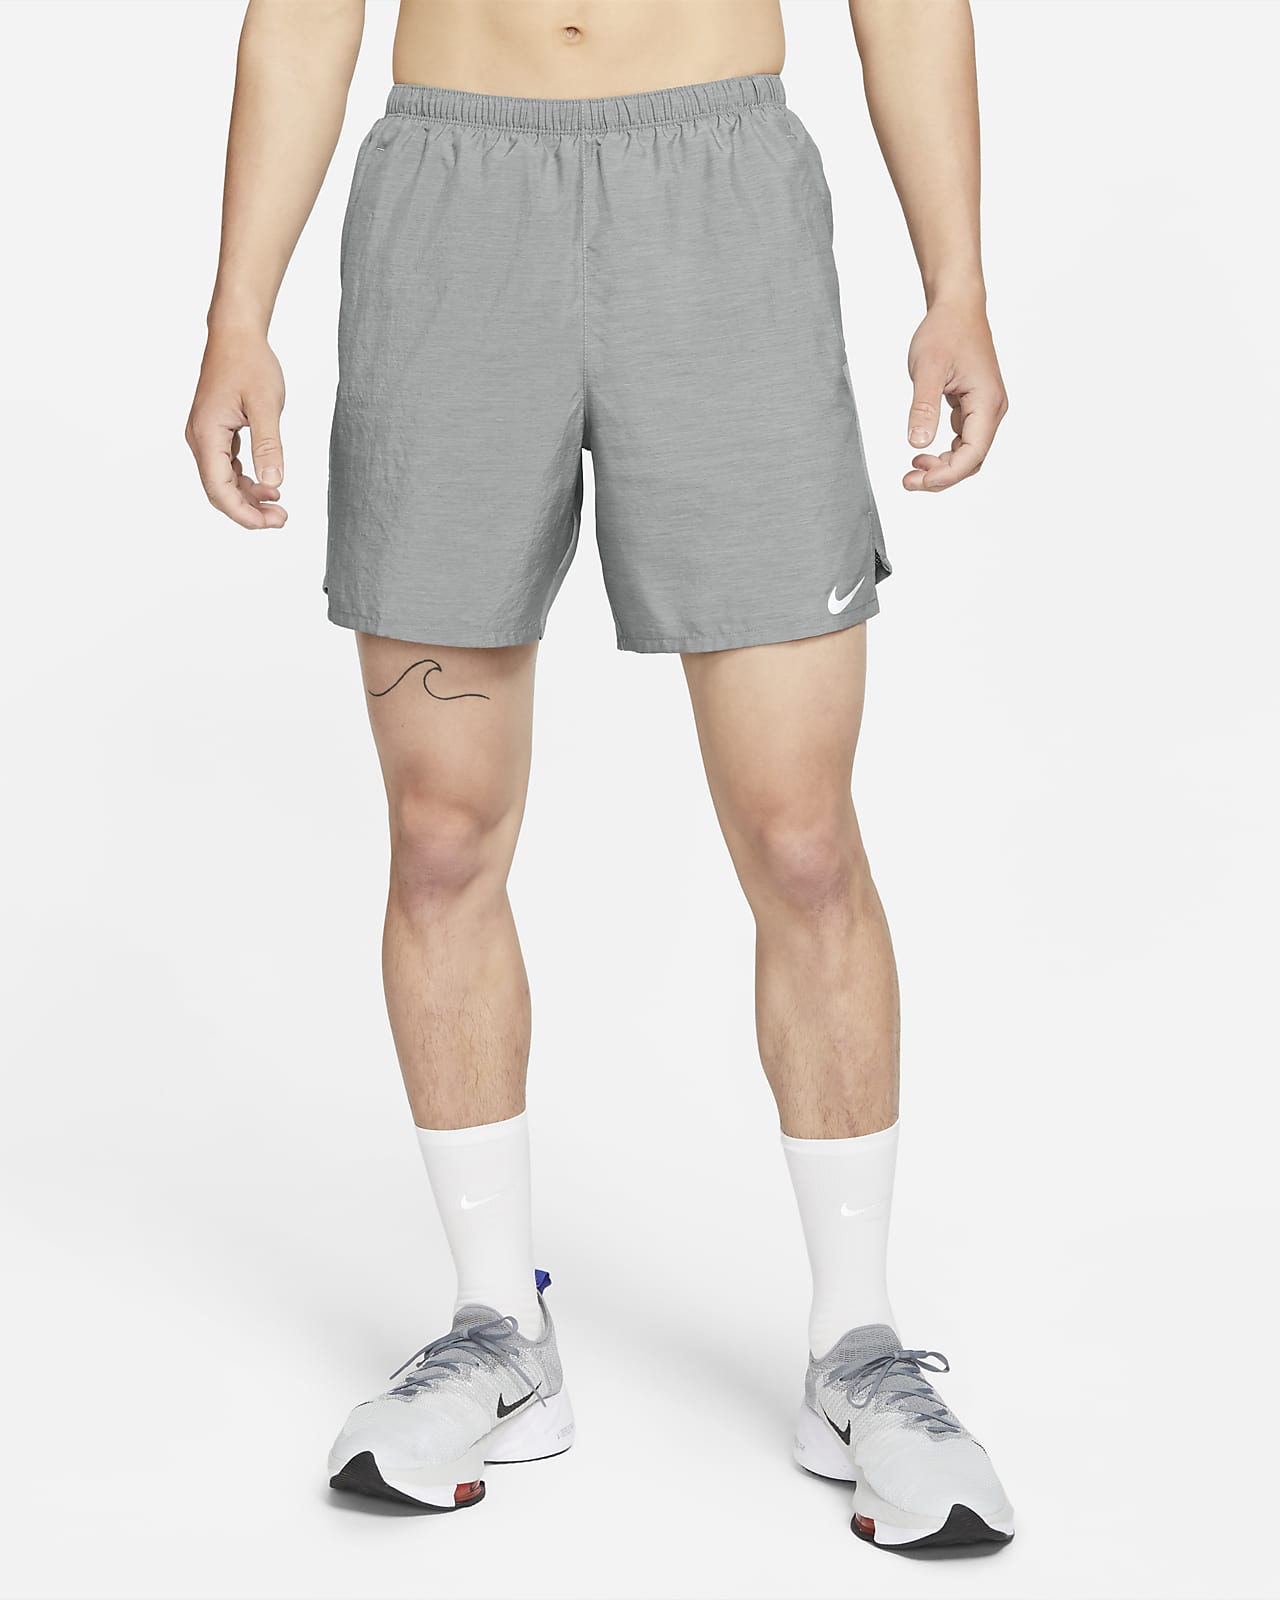 nike men's challenger shorts